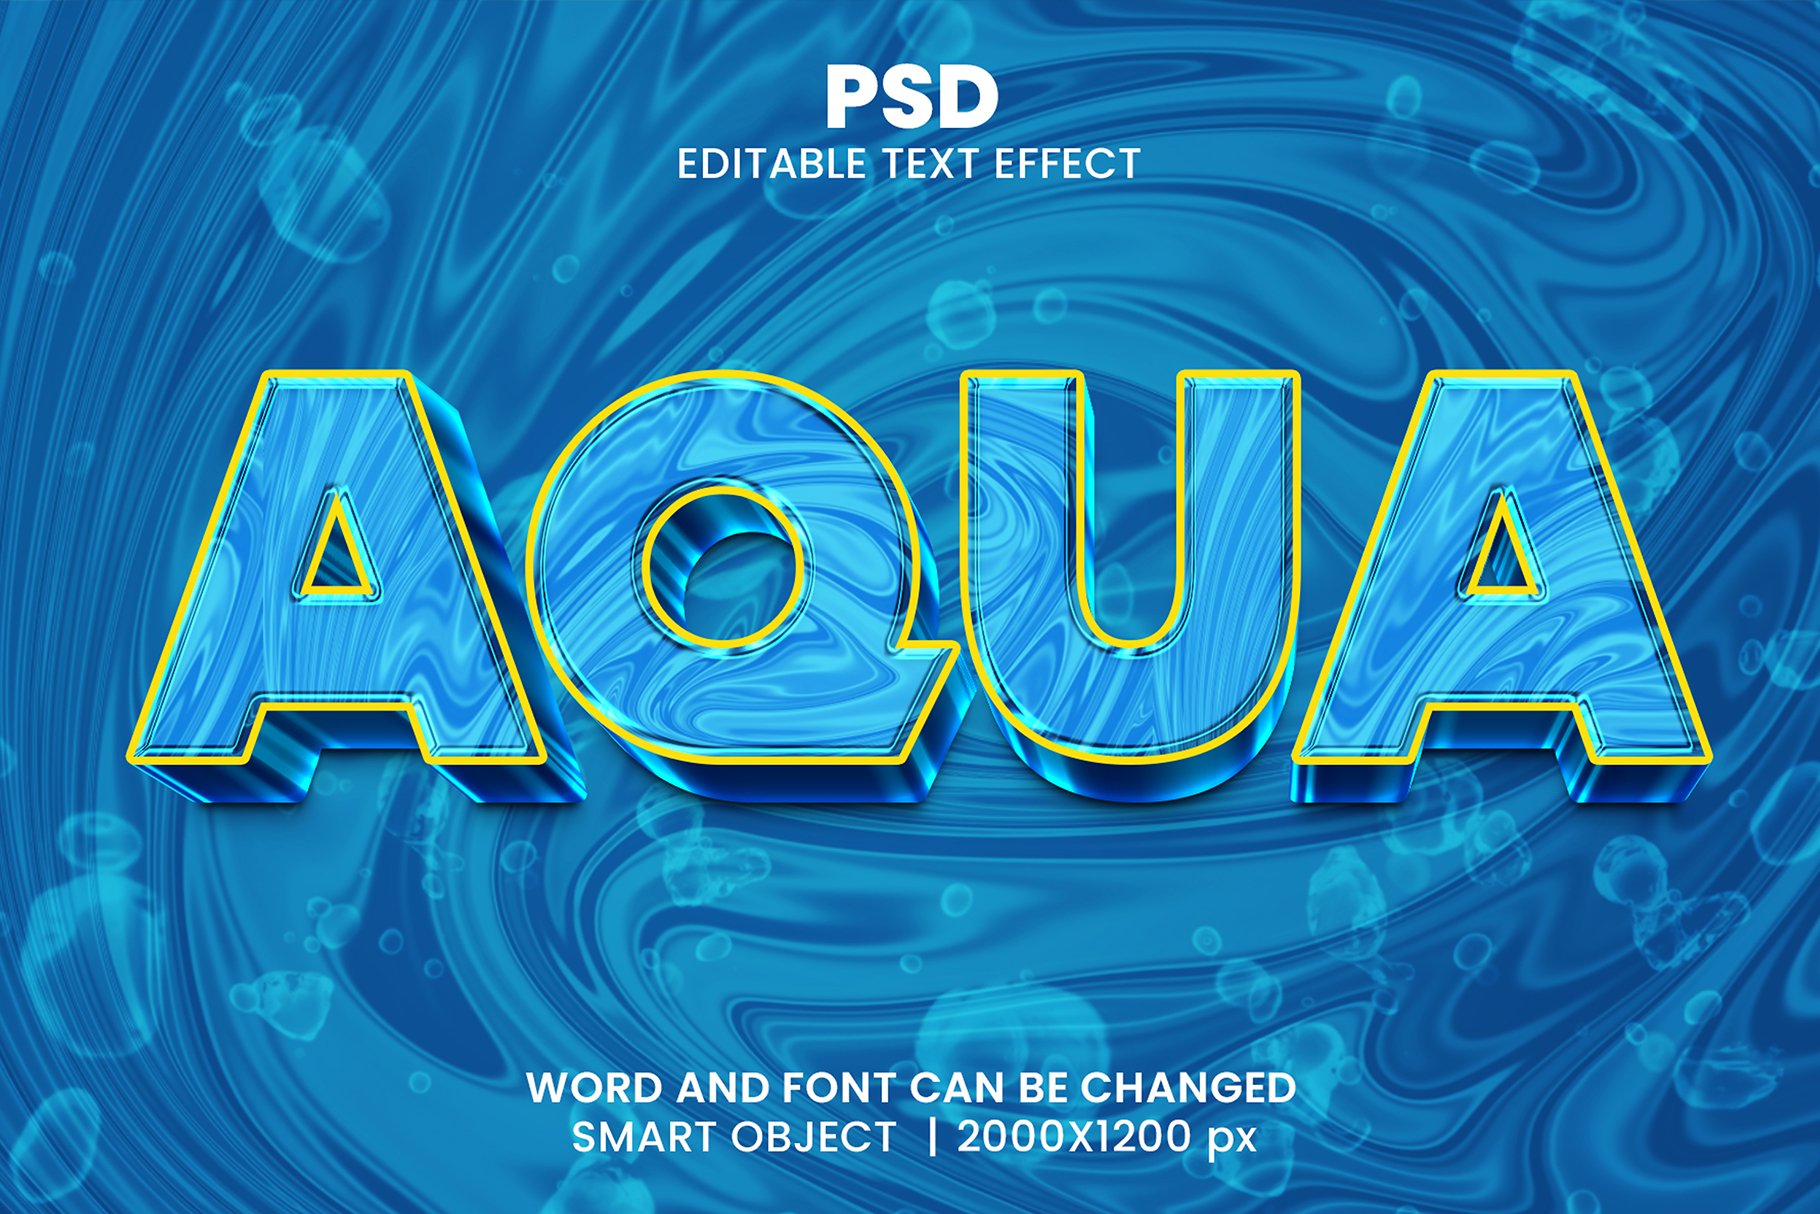 Aqua 3d Editable Psd Text Effectcover image.